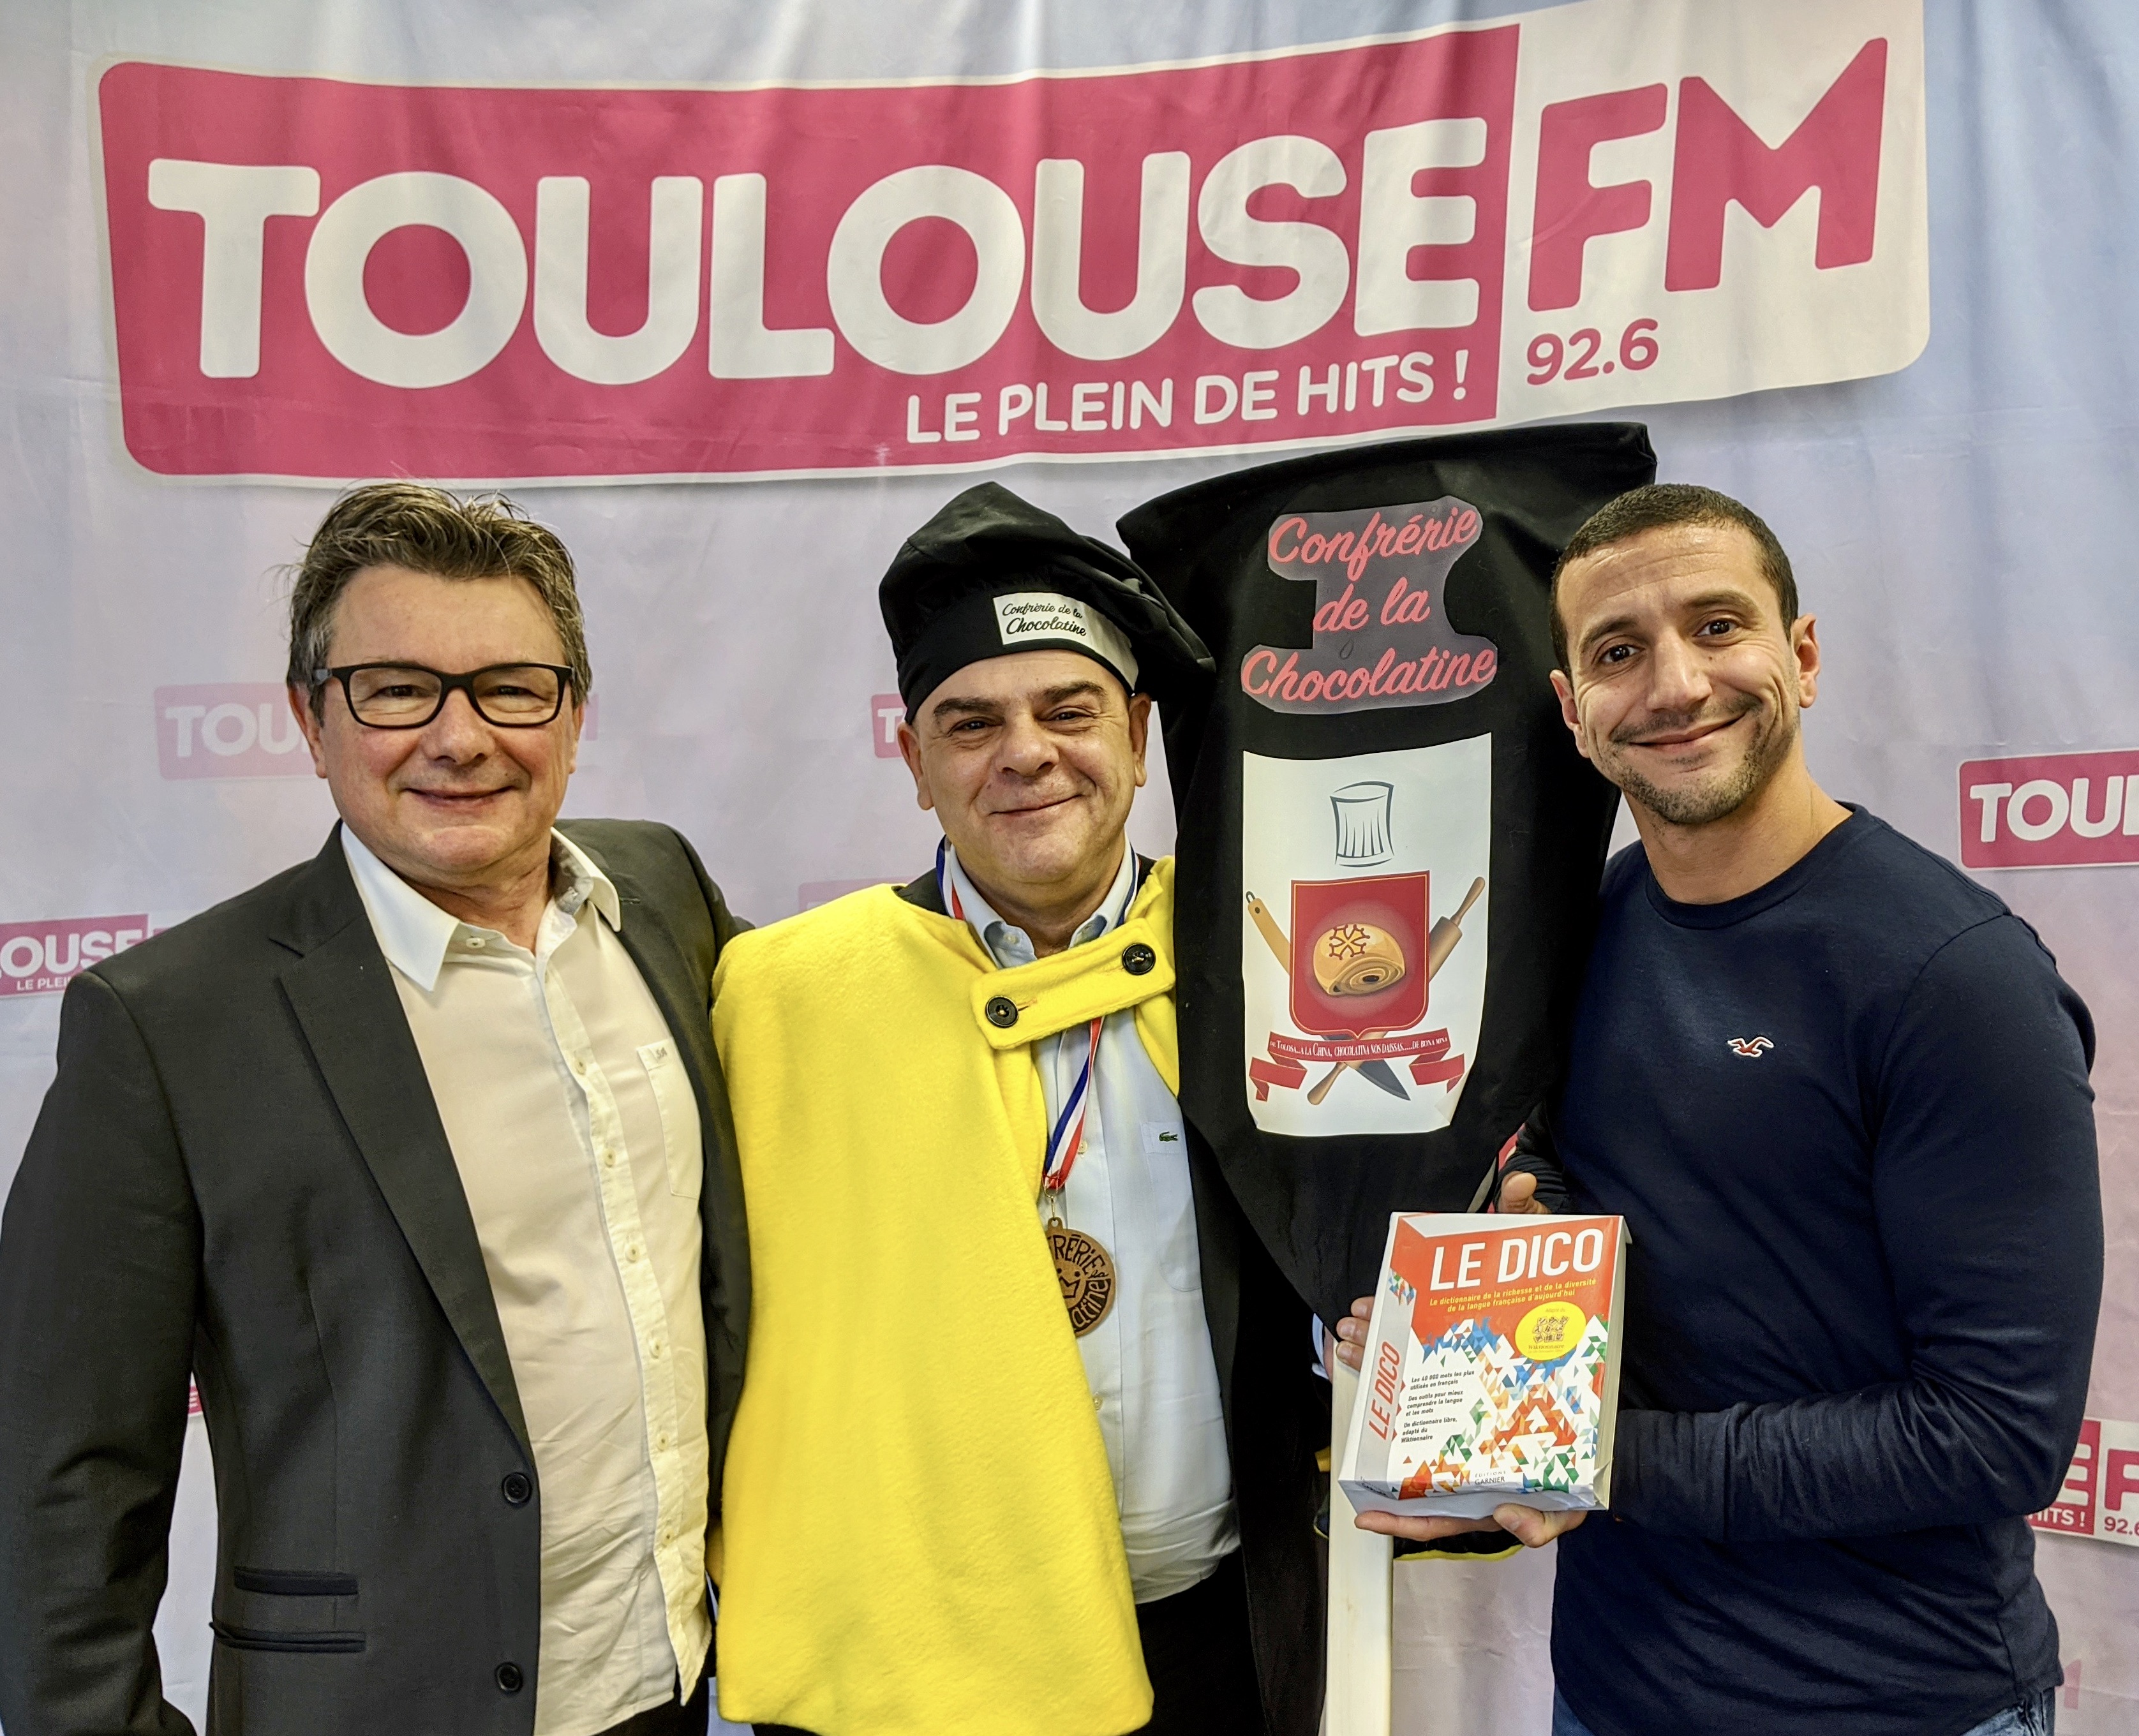 Pierre Nicolas Bapt de la Confrérie de la Chocolatine, entouré par Sylvain Athiel et Reyda Messaoudi ,animateur à Toulouse FM autour du "Dico".